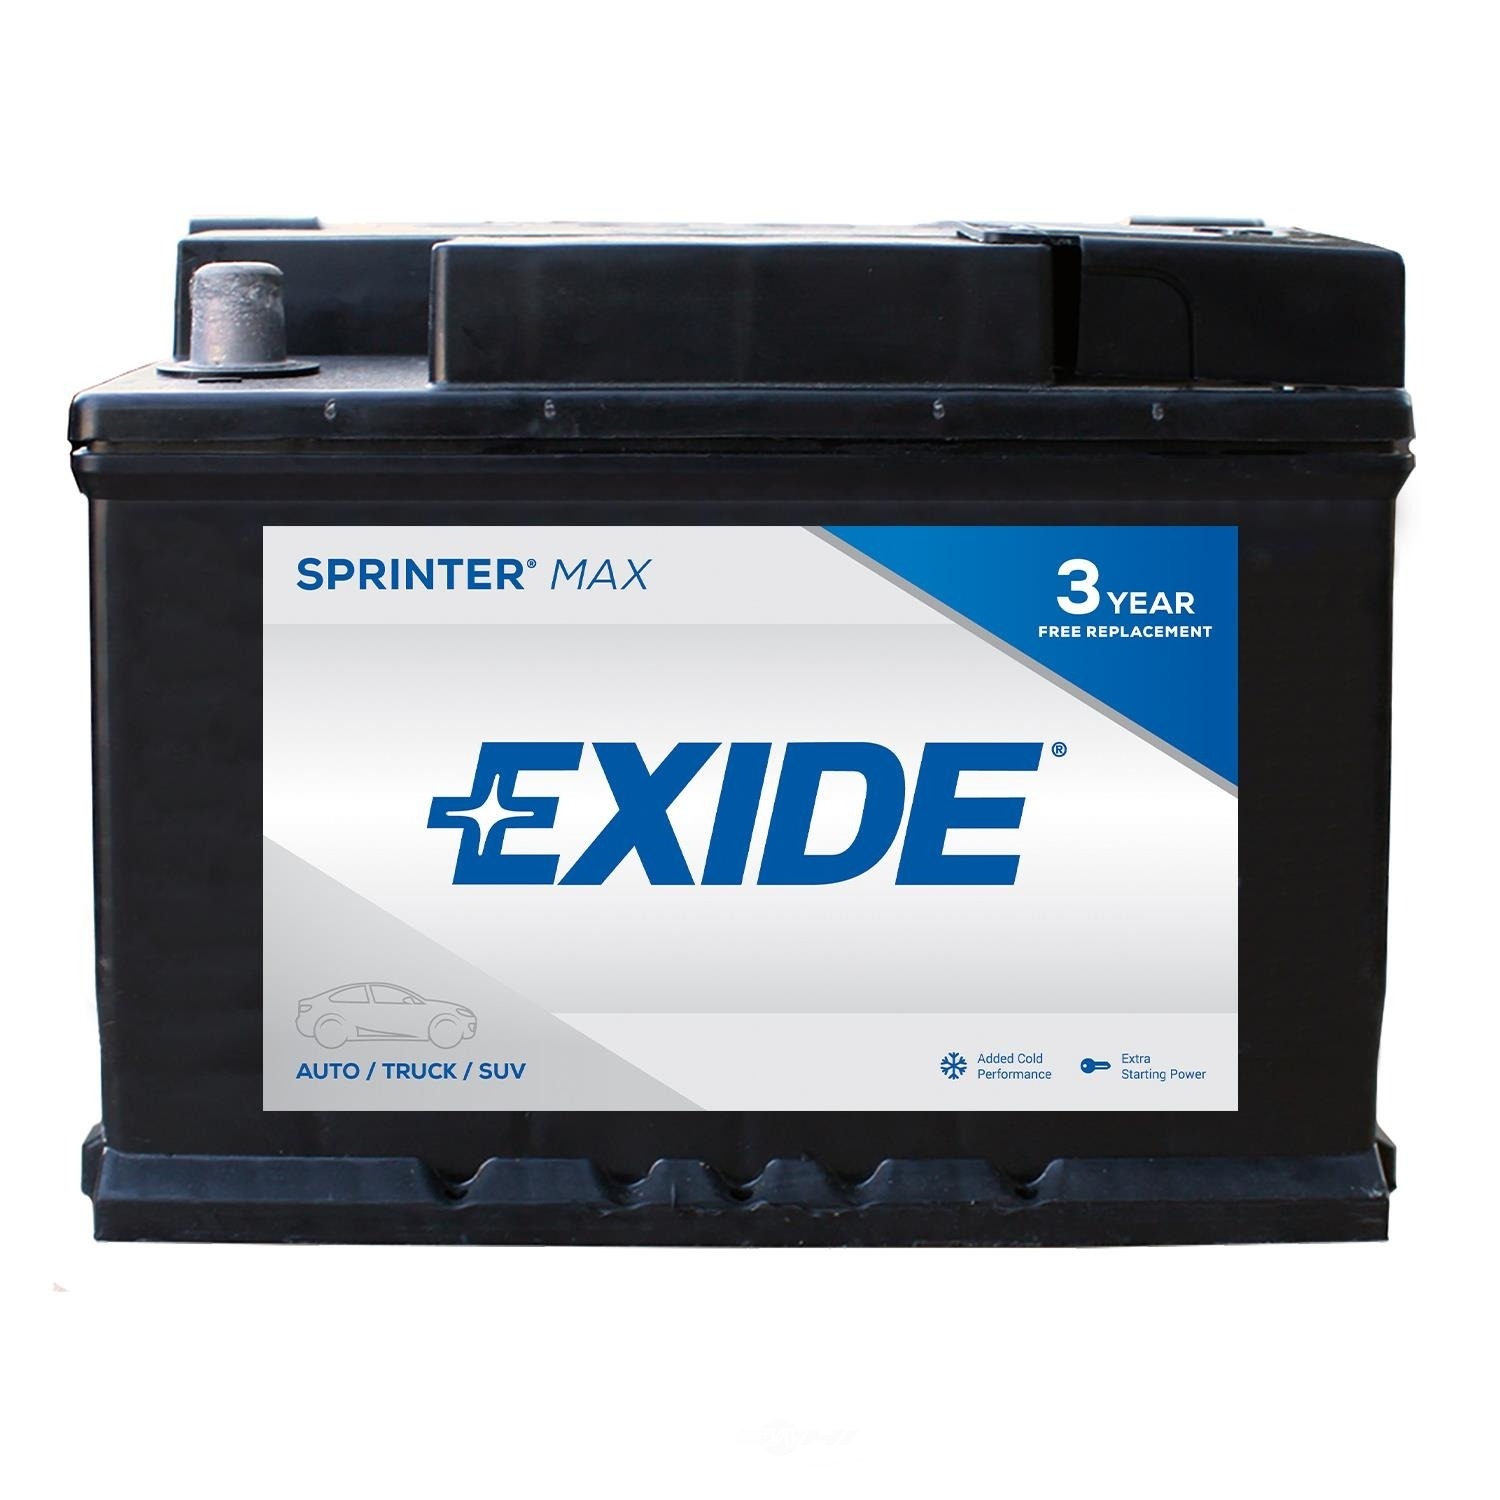 EXIDE BATTERIES - SPRINTER MAX - CCA: 600 - EX1 SX-T5/LB2/90